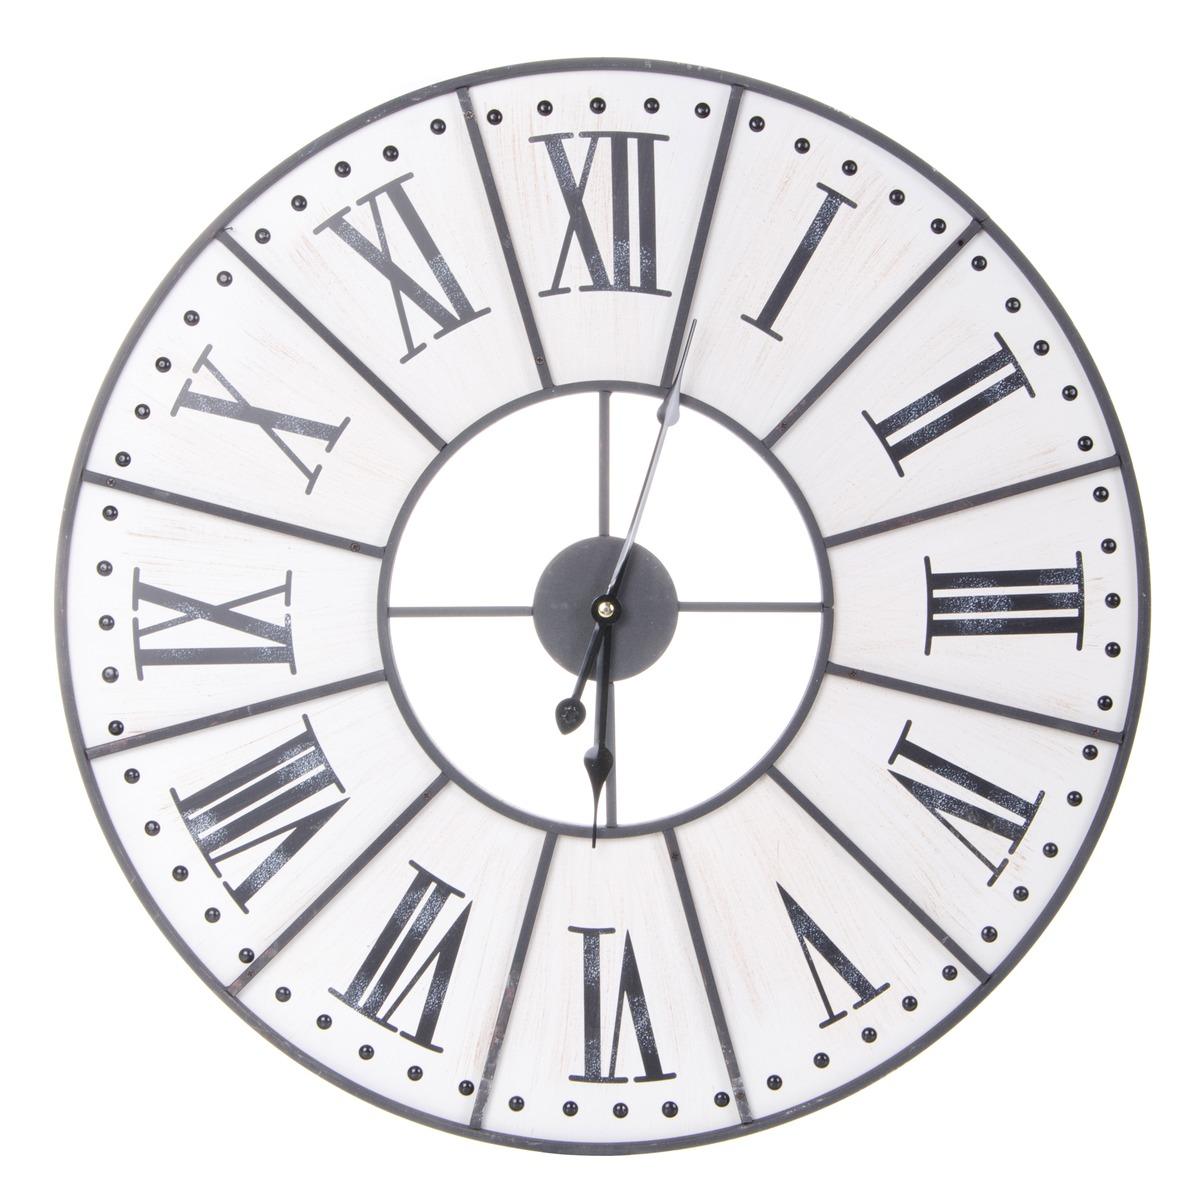 Horloge murale modèle Interior XII - Diamètre 58 cm - Noir, blanc